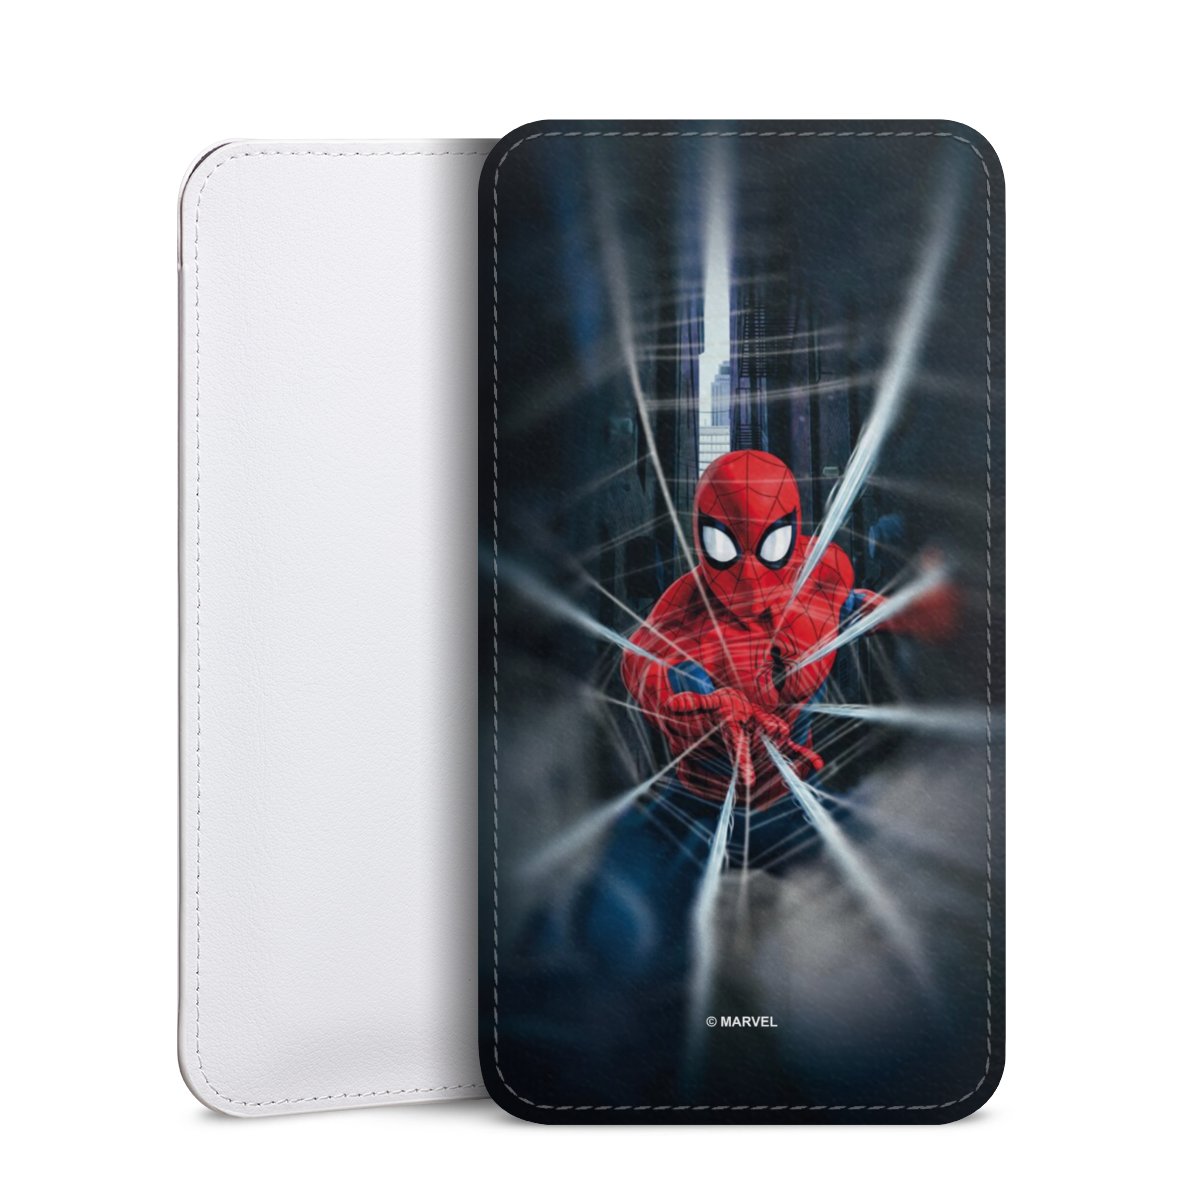 Varken Pardon medaillewinnaar Spider-Man Webs In Action voor Insteekhoesje (wit) voor Samsung Galaxy J6  Plus Duos (2018) van DeinDesign